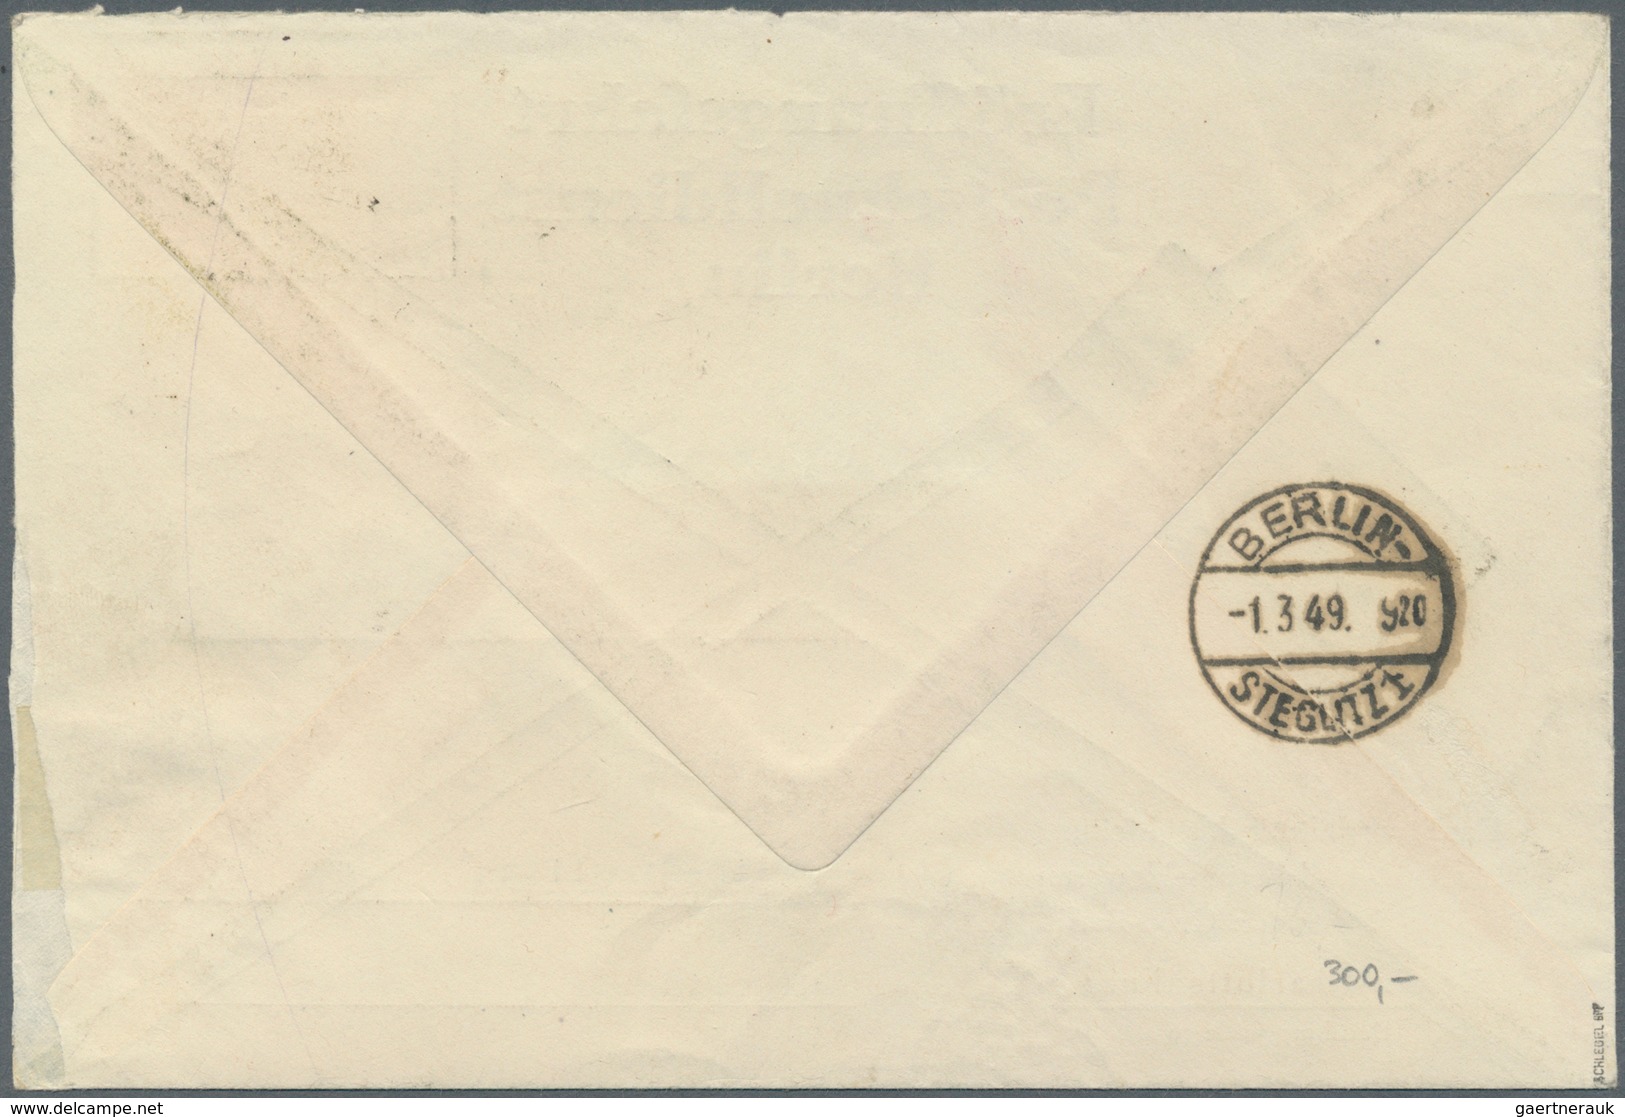 20621 Berlin - Postschnelldienst: 1949, Amtlicher Umschlag Eröffnungsfahrt Mit 1.- DM SA, Der Umschlag Im - Covers & Documents